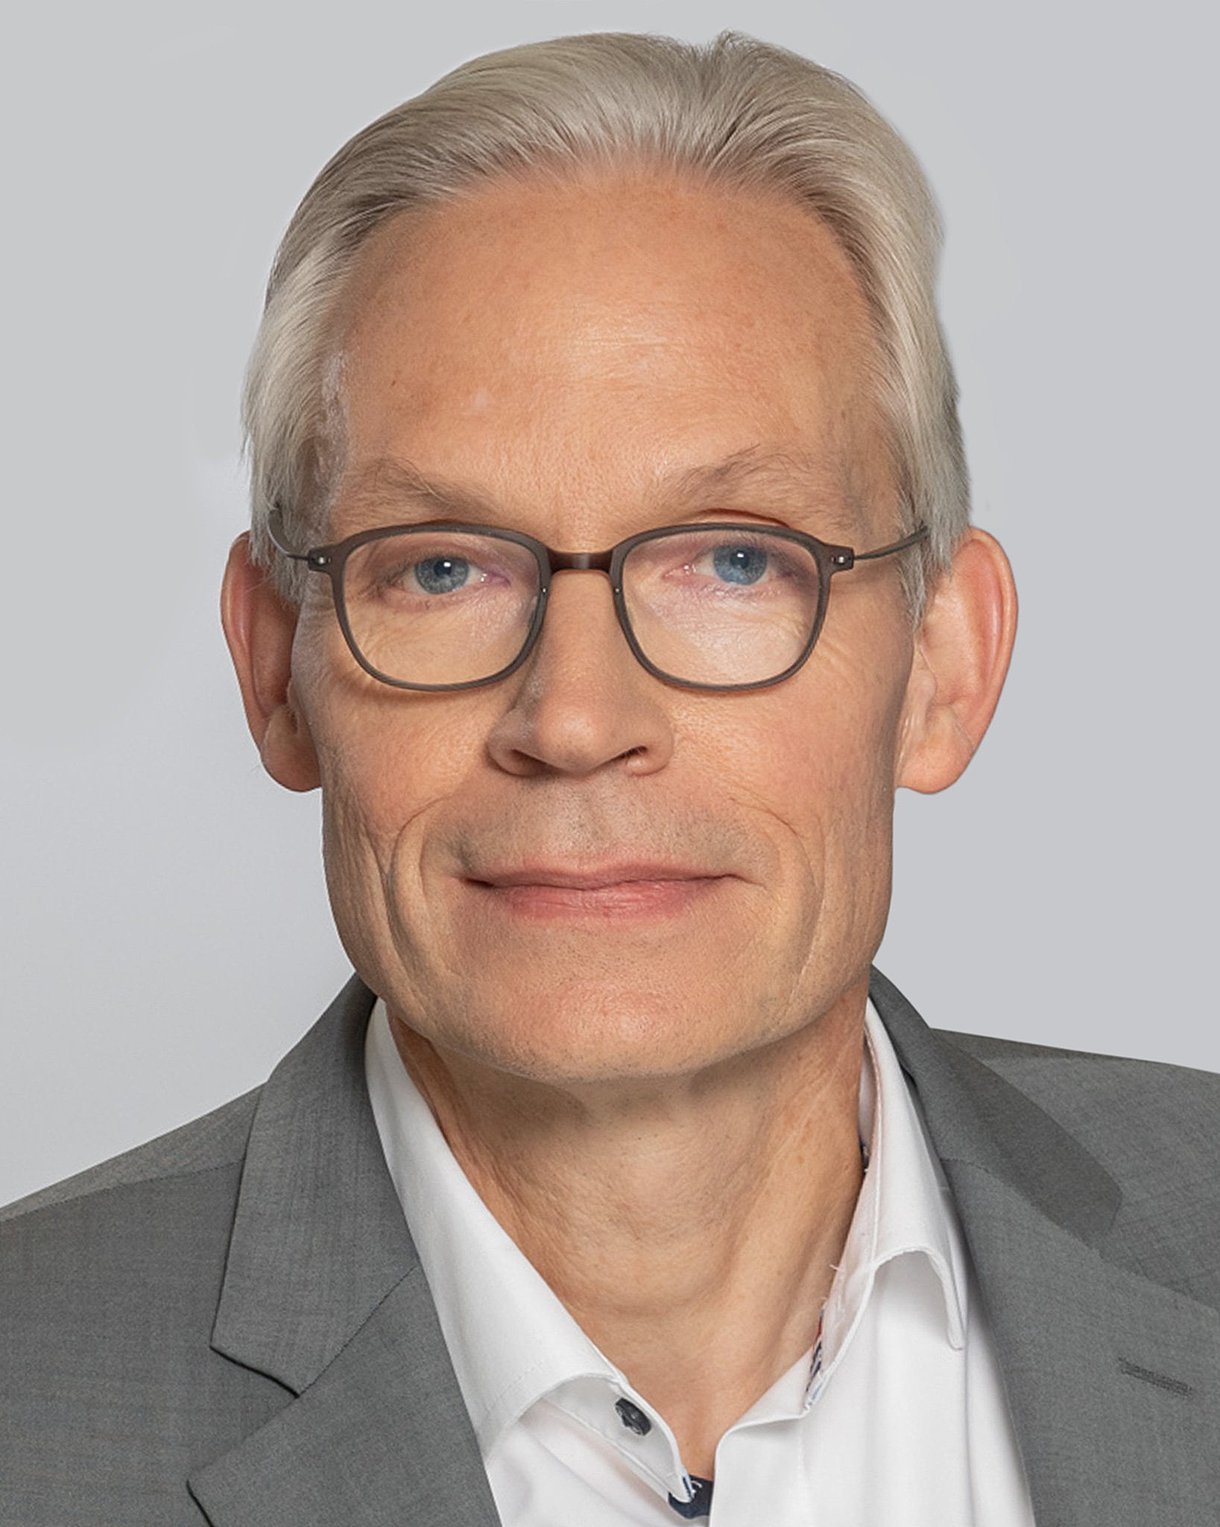 Foto: Porträt von Matthias Mohrmann, stellvertretender Vorstandsvorsitzender der AOK Rheinland/Hamburg.